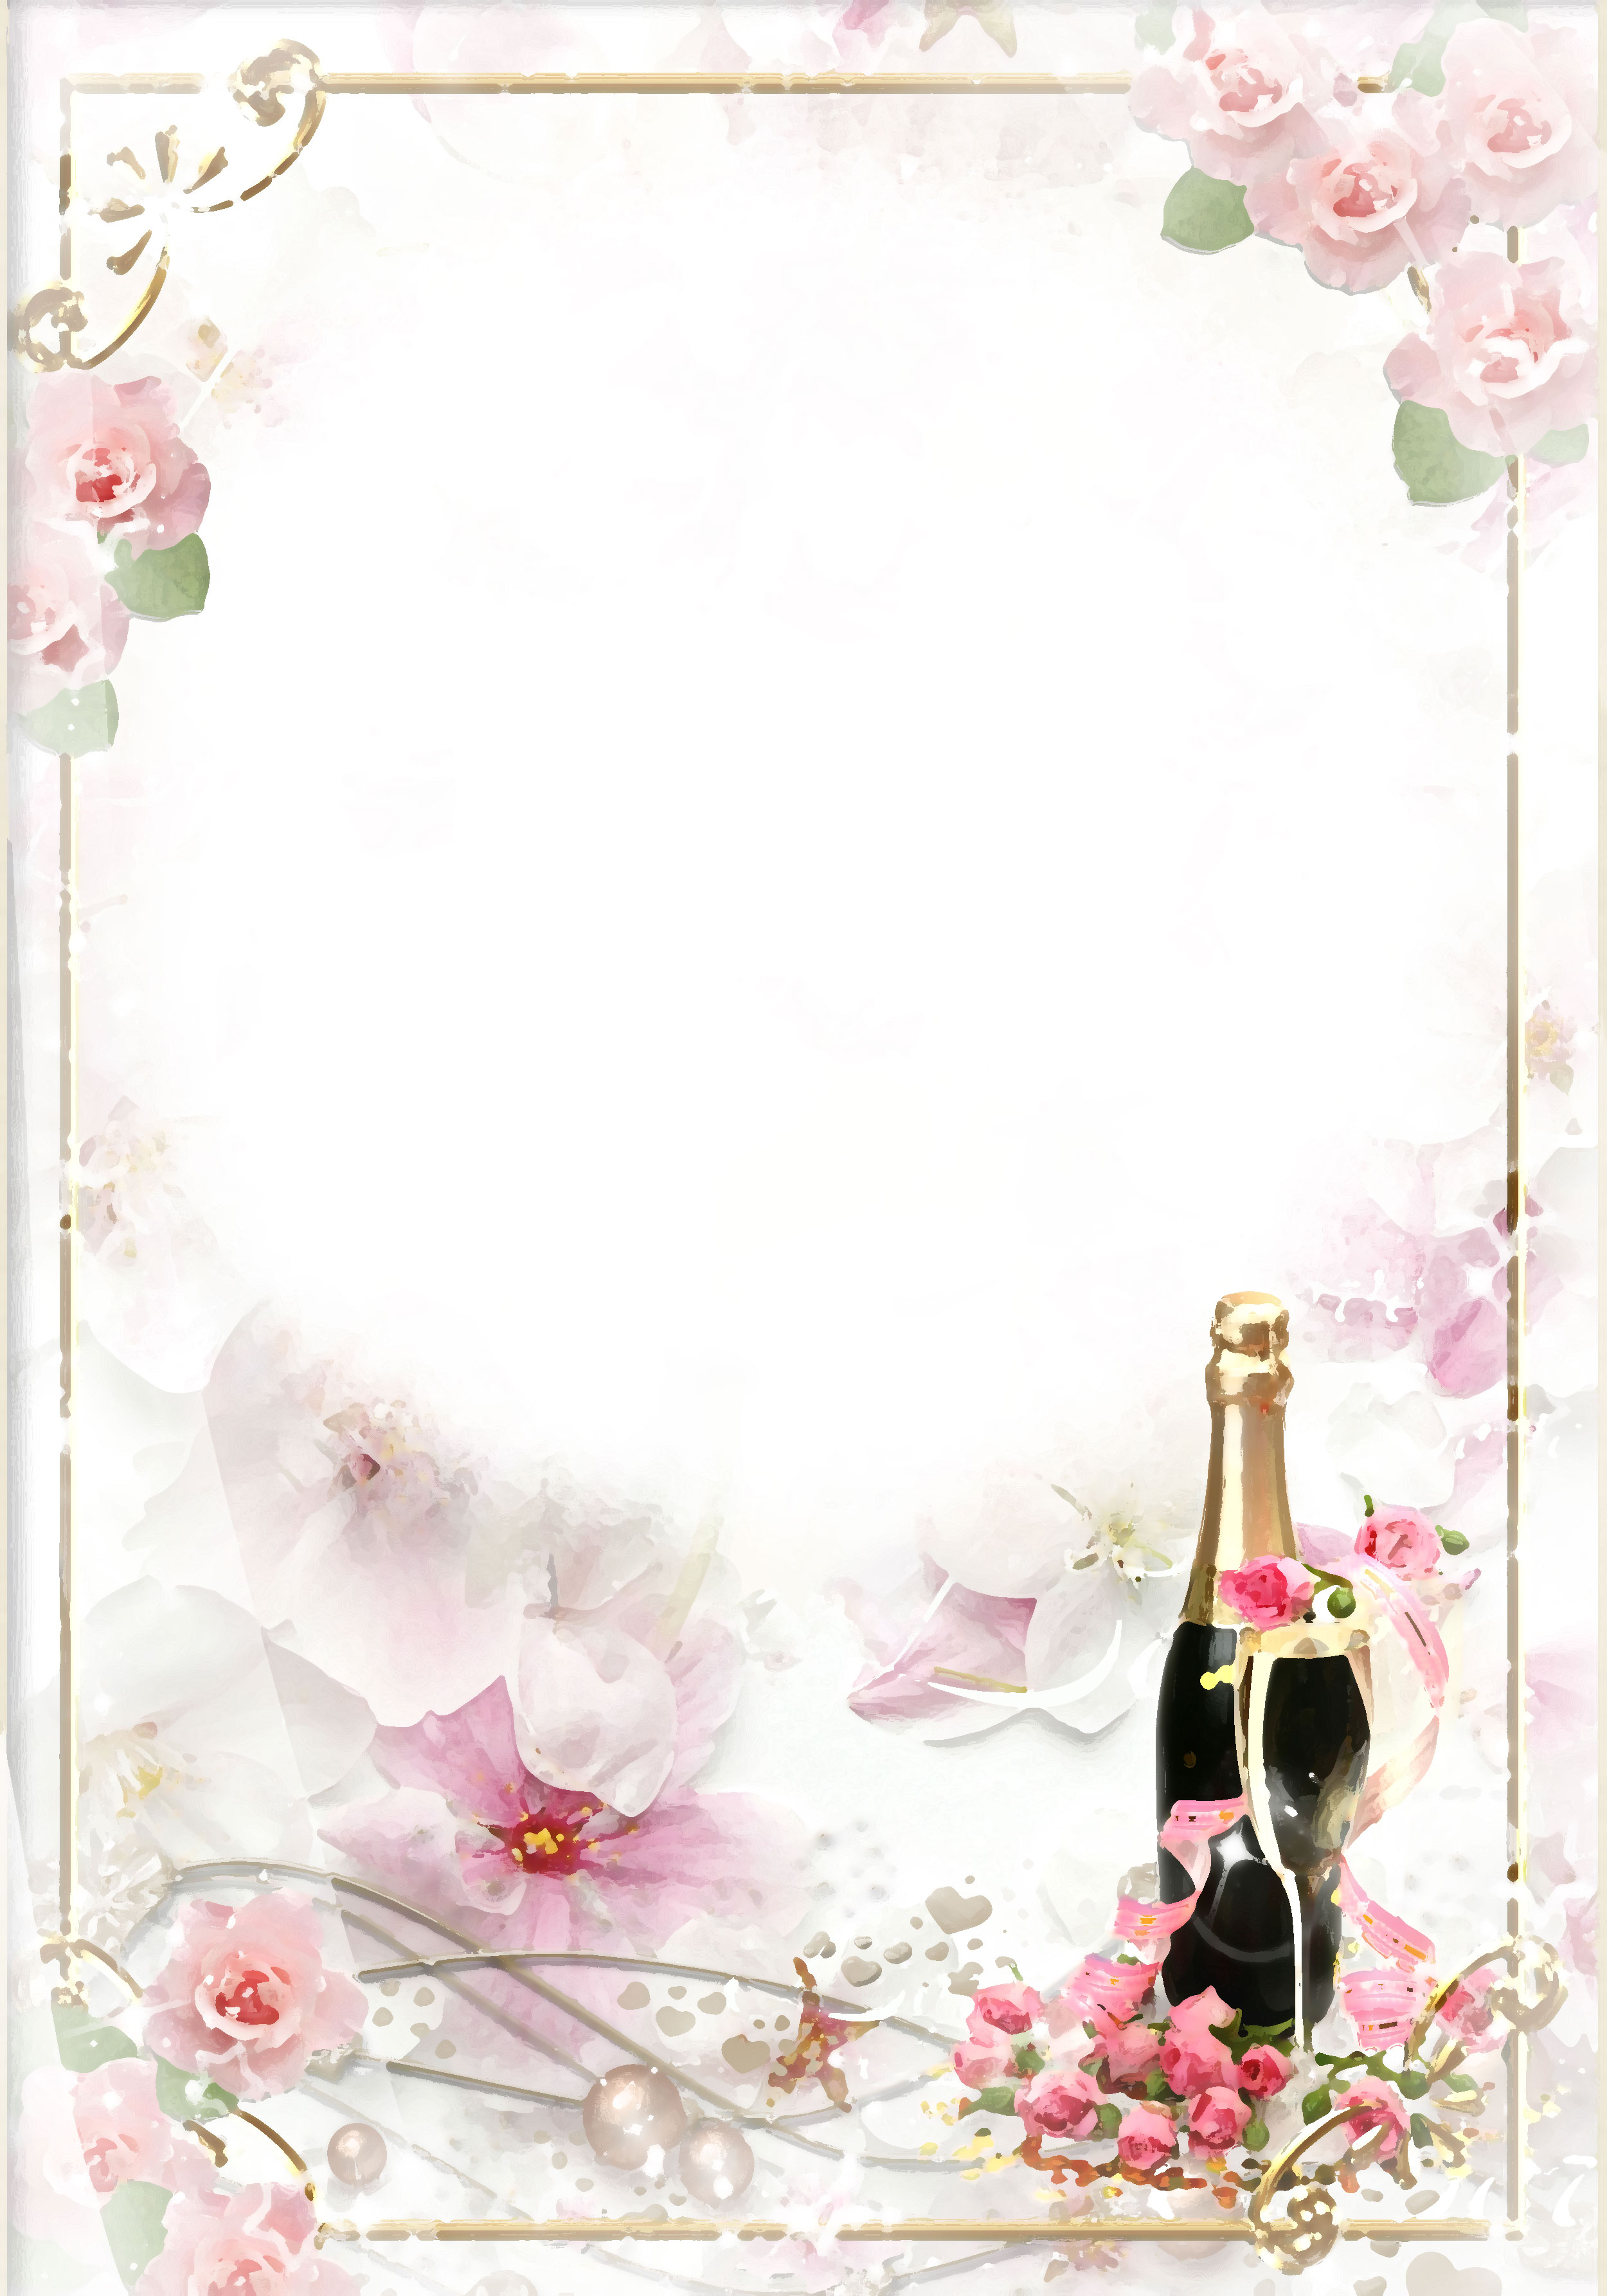 壁紙 背景イラスト 花のフレーム 外枠 No 041 赤いバラとワインボトル